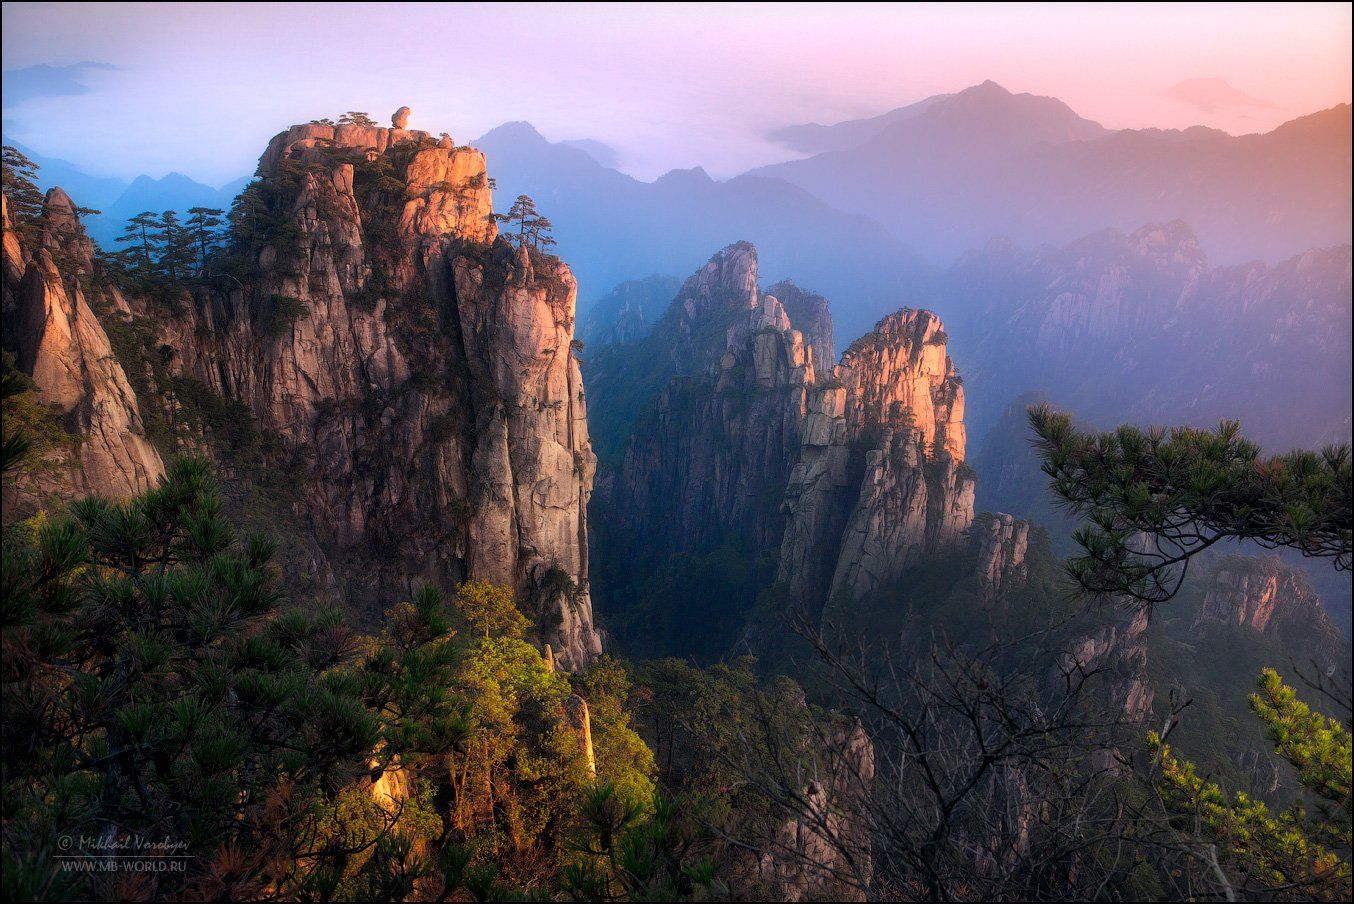 Китай, Анхой, горы, Хуаншань, пейзаж, рассвет, фототур, Михаил Воробььев